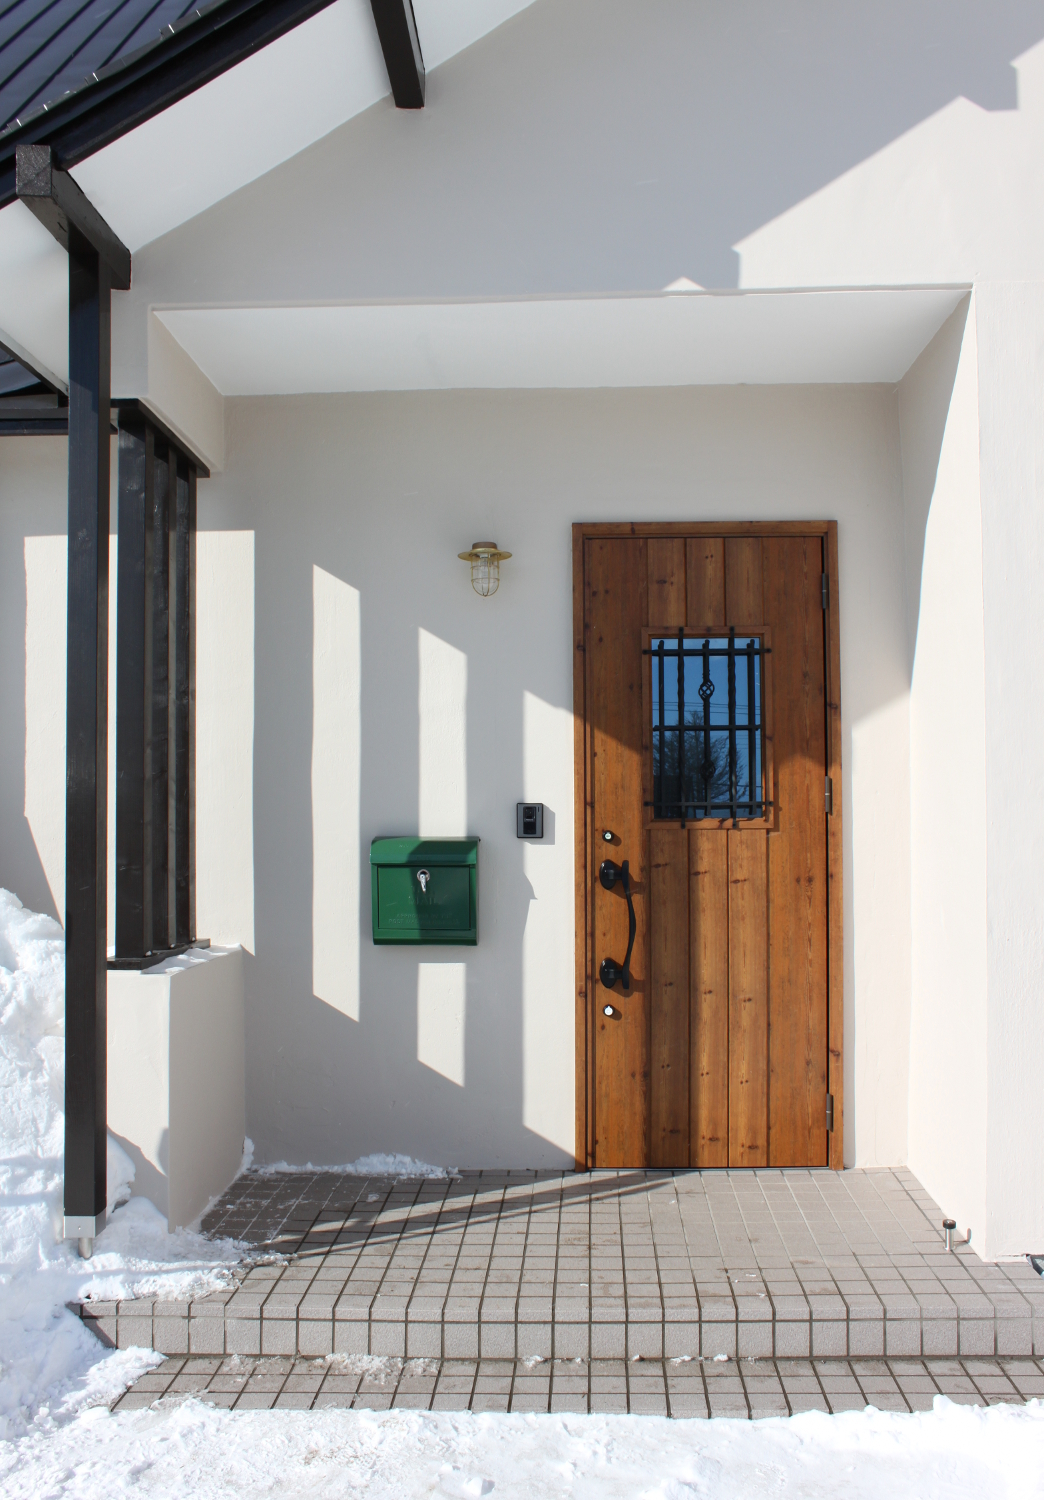 アンティーク調断熱玄関ドア 札幌のデザインリフォーム・リノベーションイメージクラフト